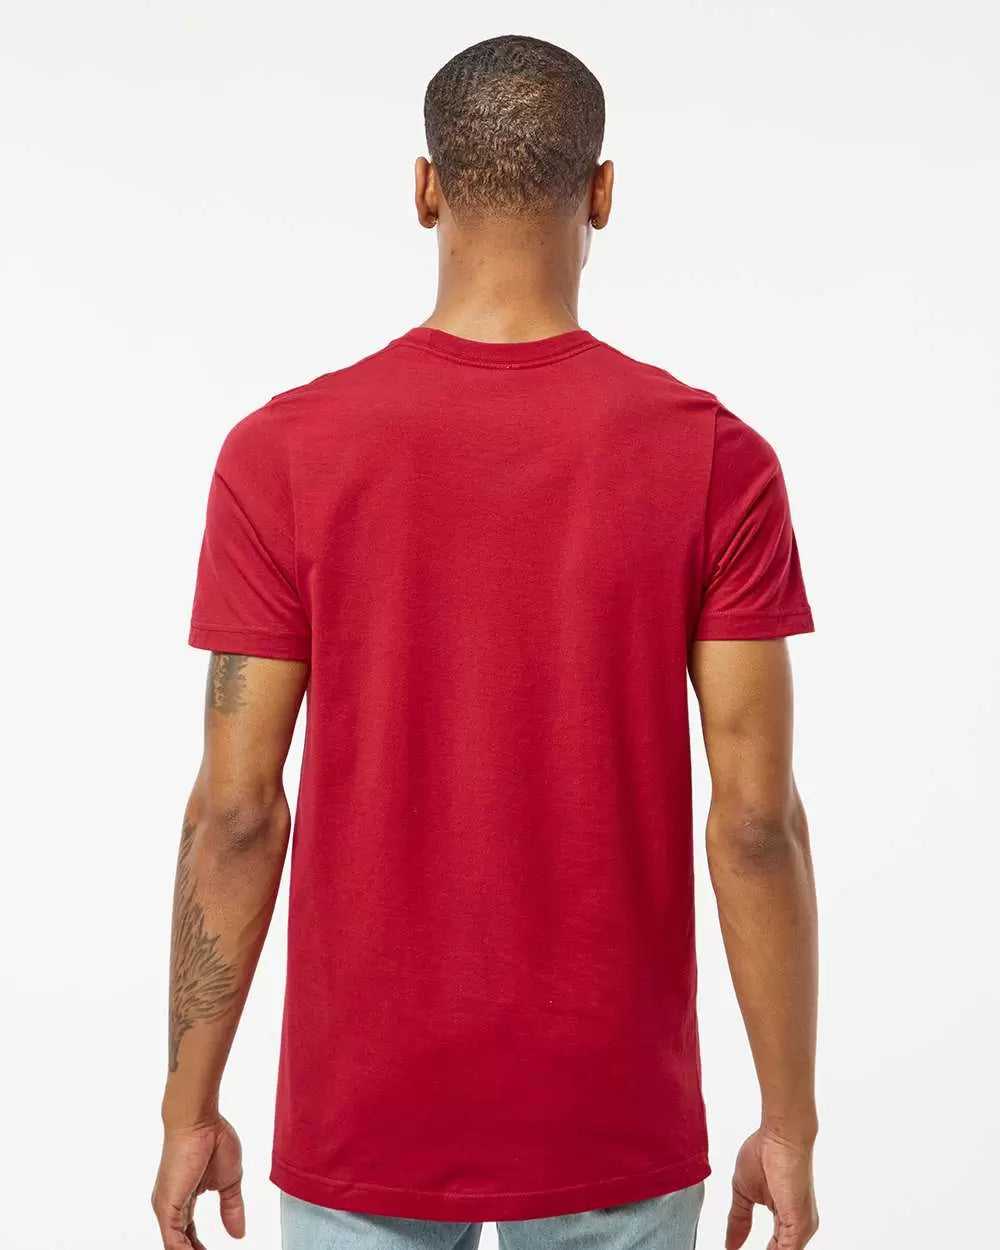 Tultex 502 Premium Cotton T-Shirt - Cardinal - HIT a Double - 3